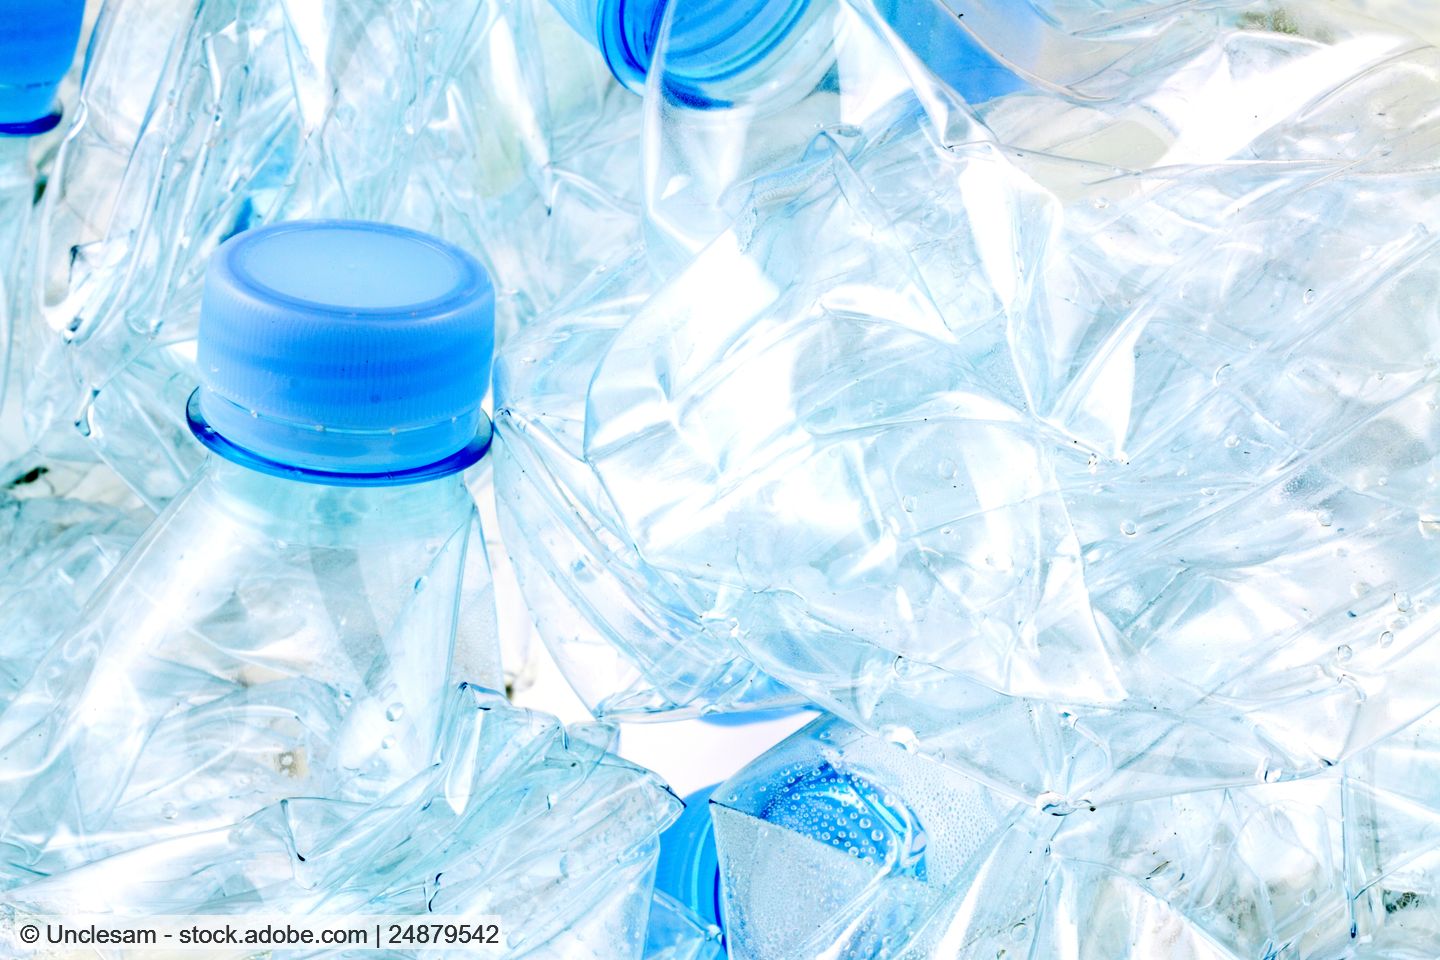 Mehrere zerdrückte klare PET-Flaschen mit hellblauen Verschlüssen